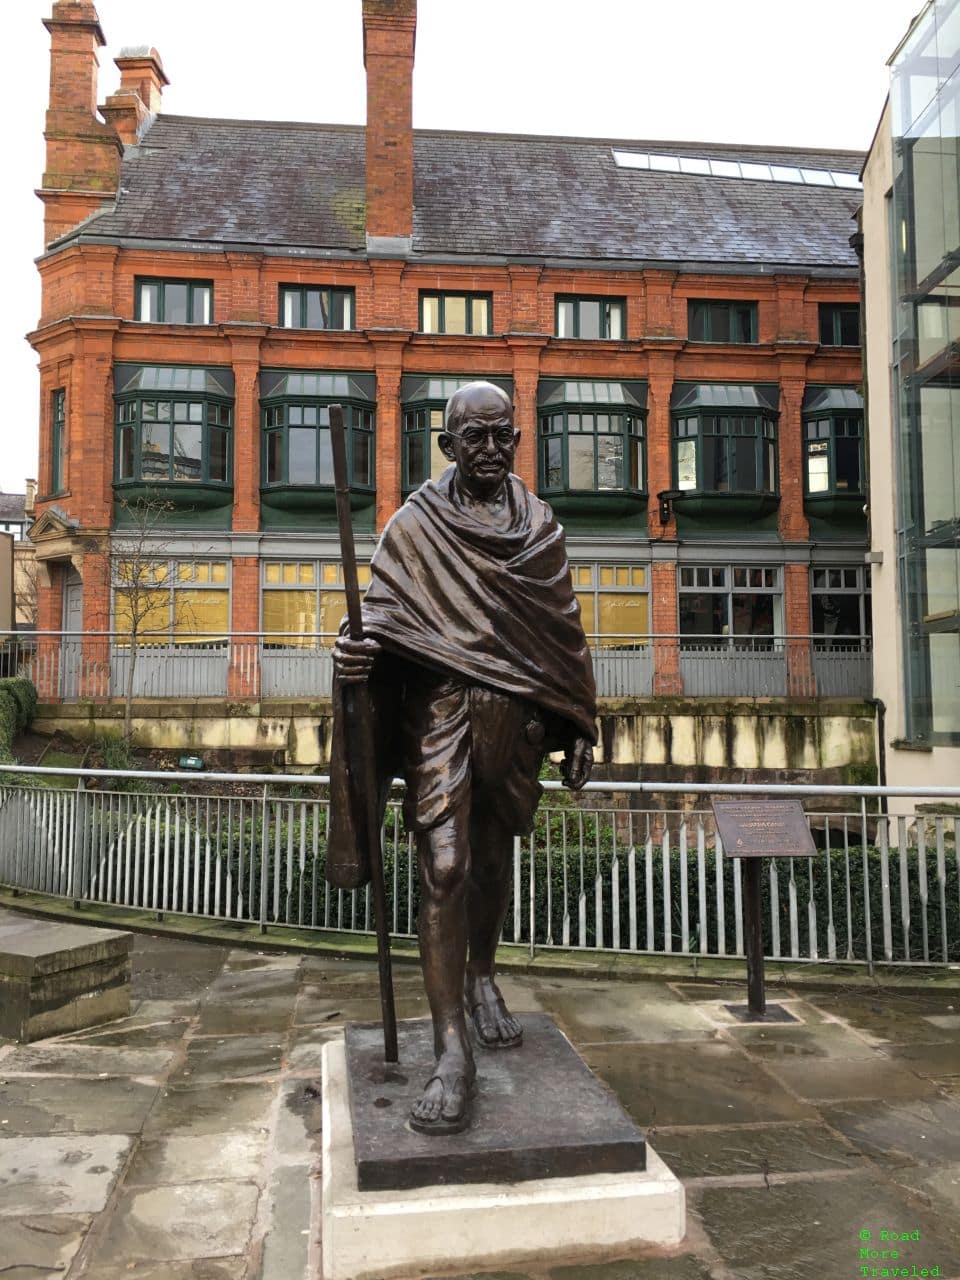 Gandhi statue in Manchester